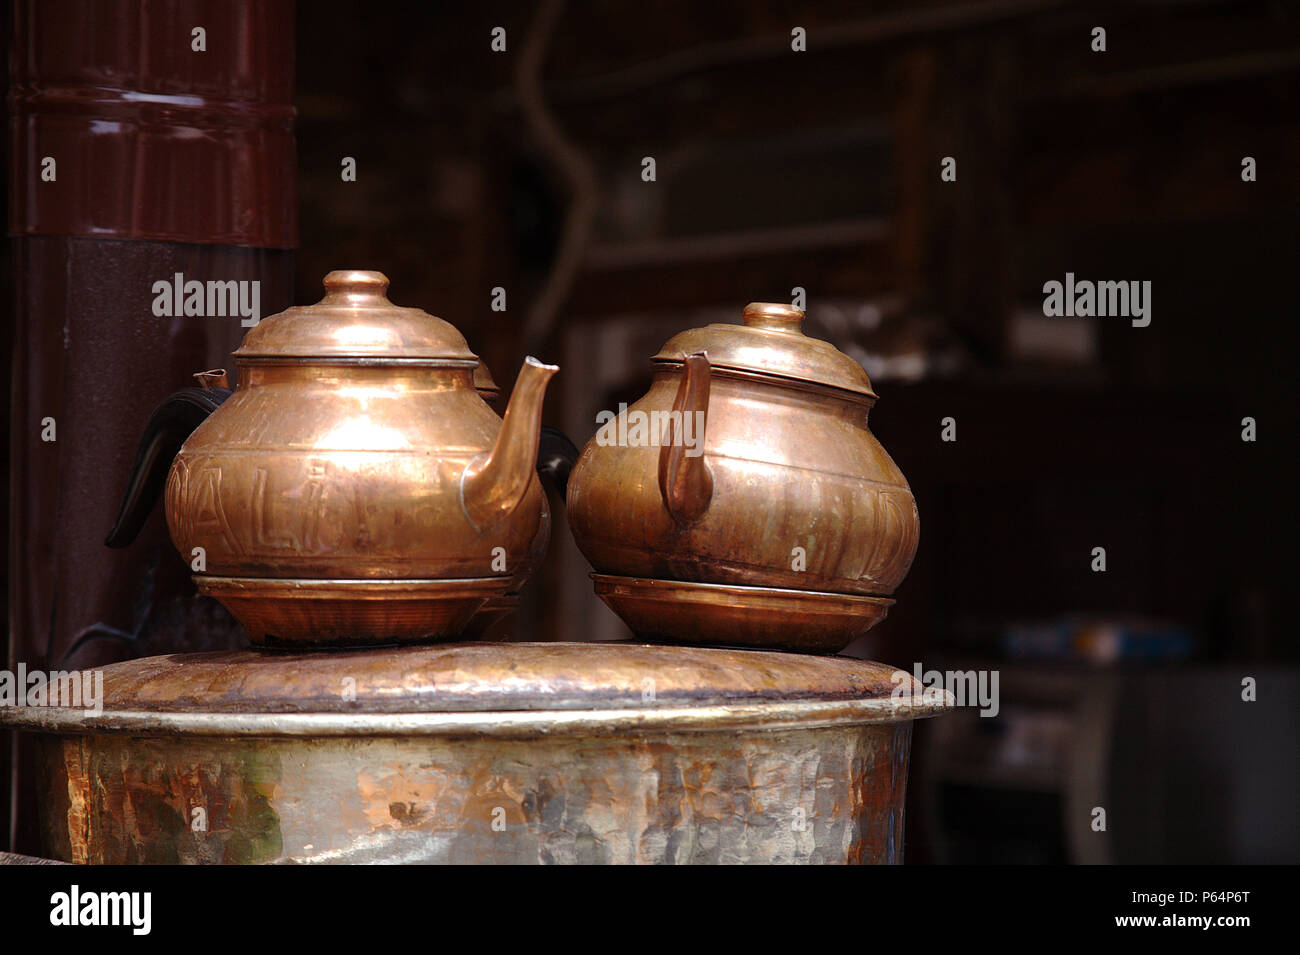 Copper teapots in Belek, Turkey Stock Photo